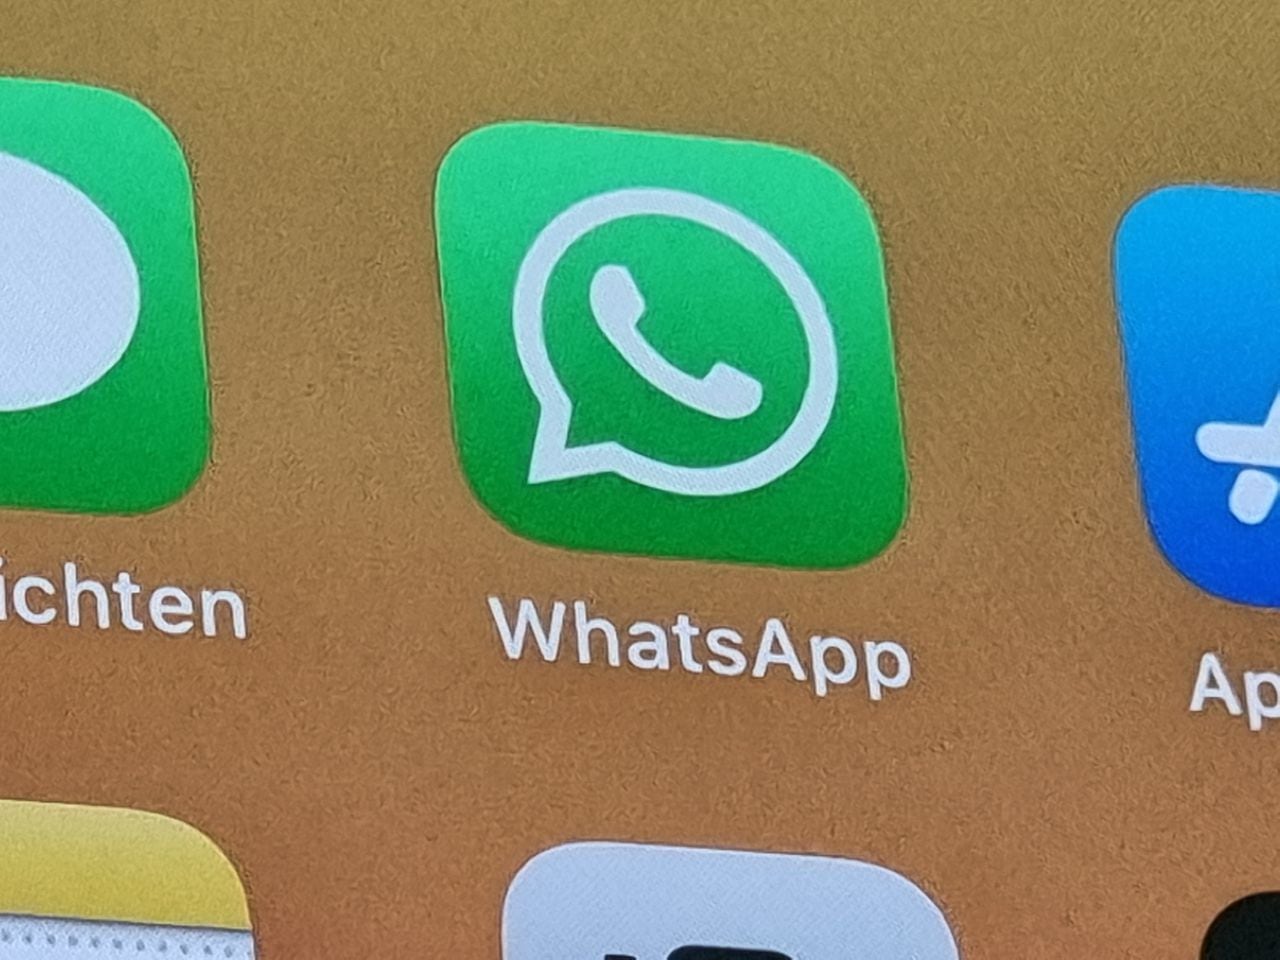 La aplicación de WhatsApp en un iPhone 12. Las nuevas regulaciones de privacidad del servicio de chat han estado provocando acaloradas discusiones desde principios de 2021. Los usuarios que no estén de acuerdo con la actualización inicialmente podrán acceder a WhatsApp sin restricciones. Sin embargo, después de algunas semanas con advertencias, la pérdida gradual de funciones importantes seguirá con el Messenger.